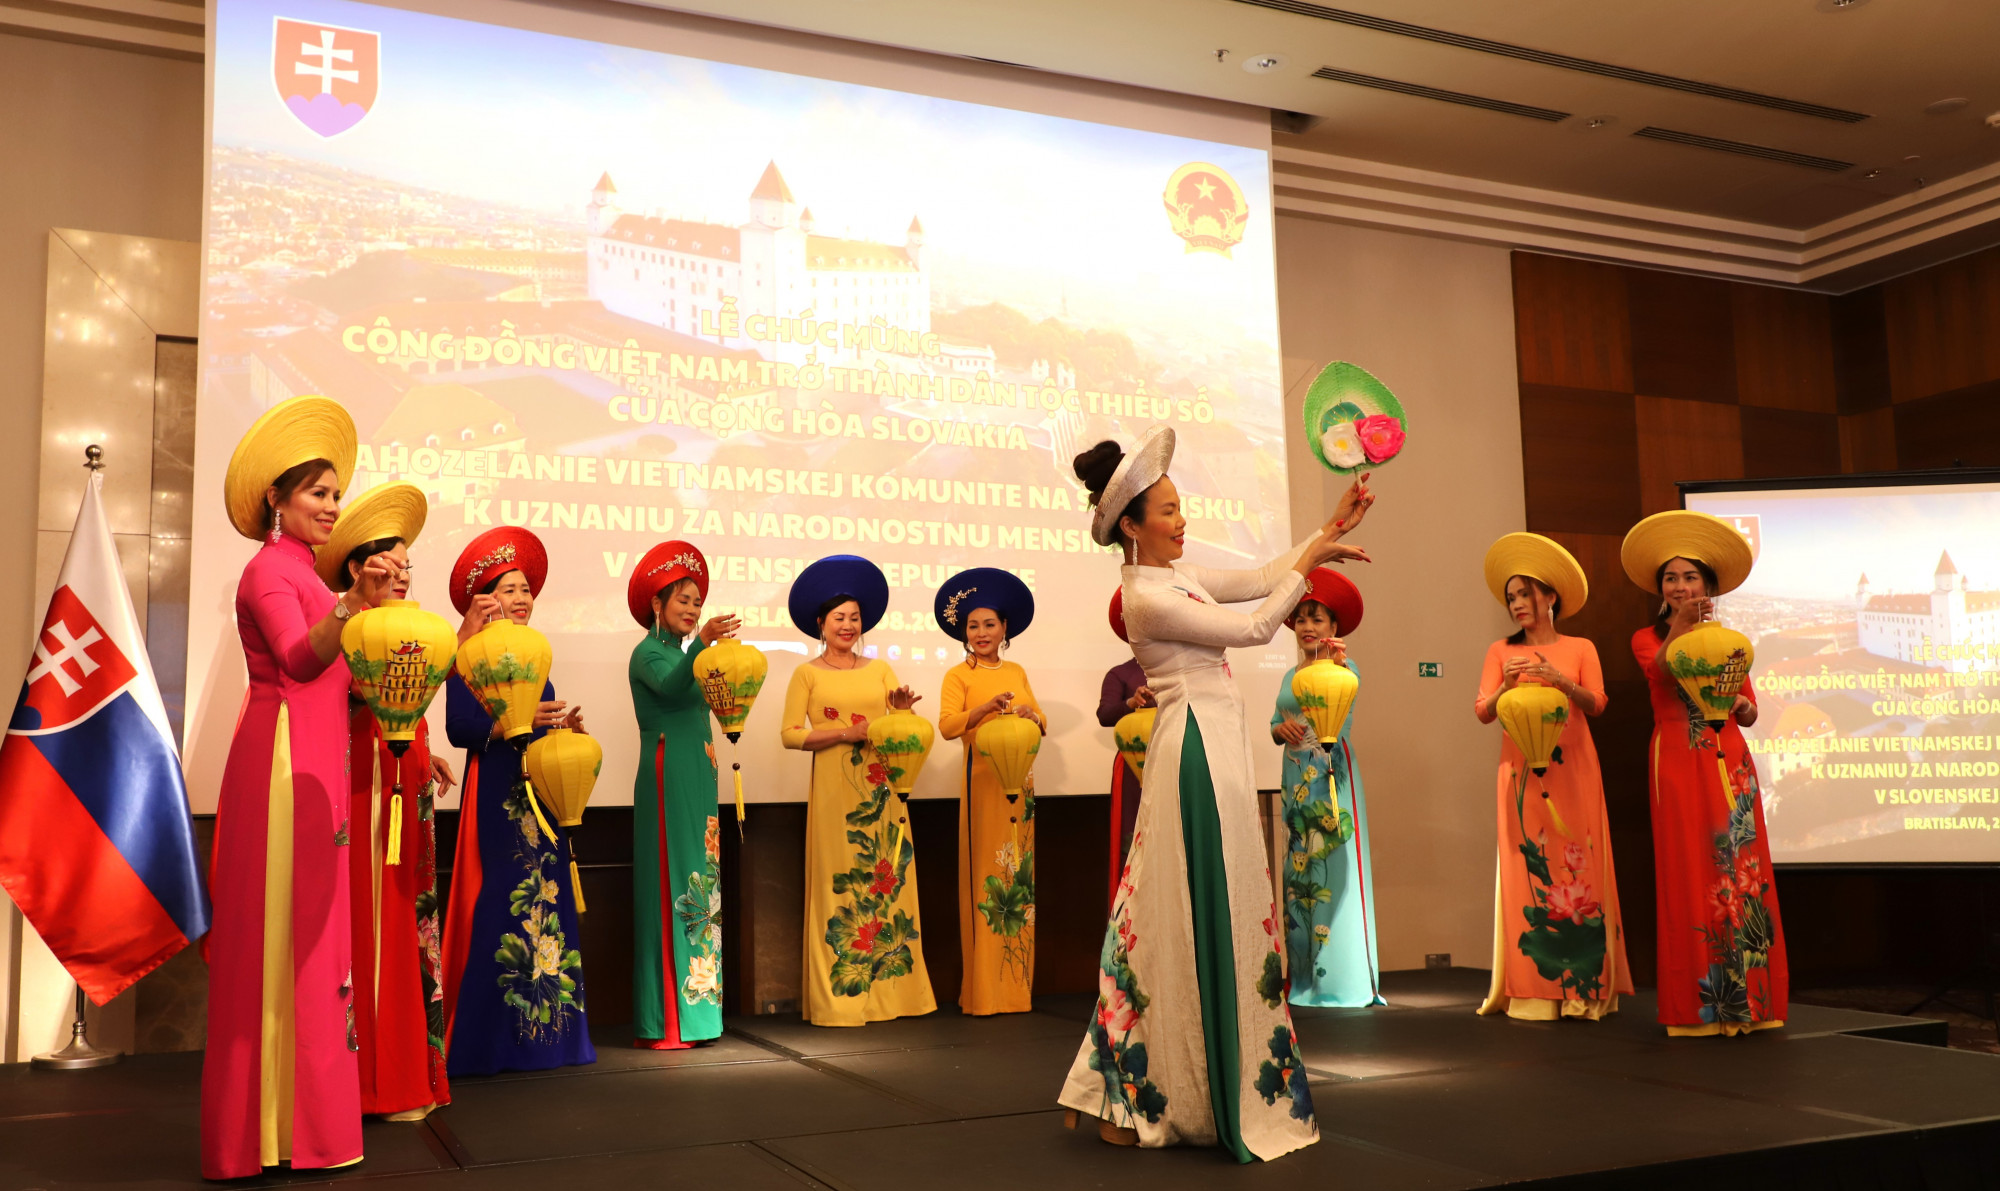 Phụ nữ Việt trong trang phục truyền thống tại Lễ Chúc mừng cộng đồng người Việt Nam tại Slovakia được công nhận là dân tộc thiểu số thứ 14 của Cộng hòa Slovakia. Ảnh: Bộ Ngoại giao